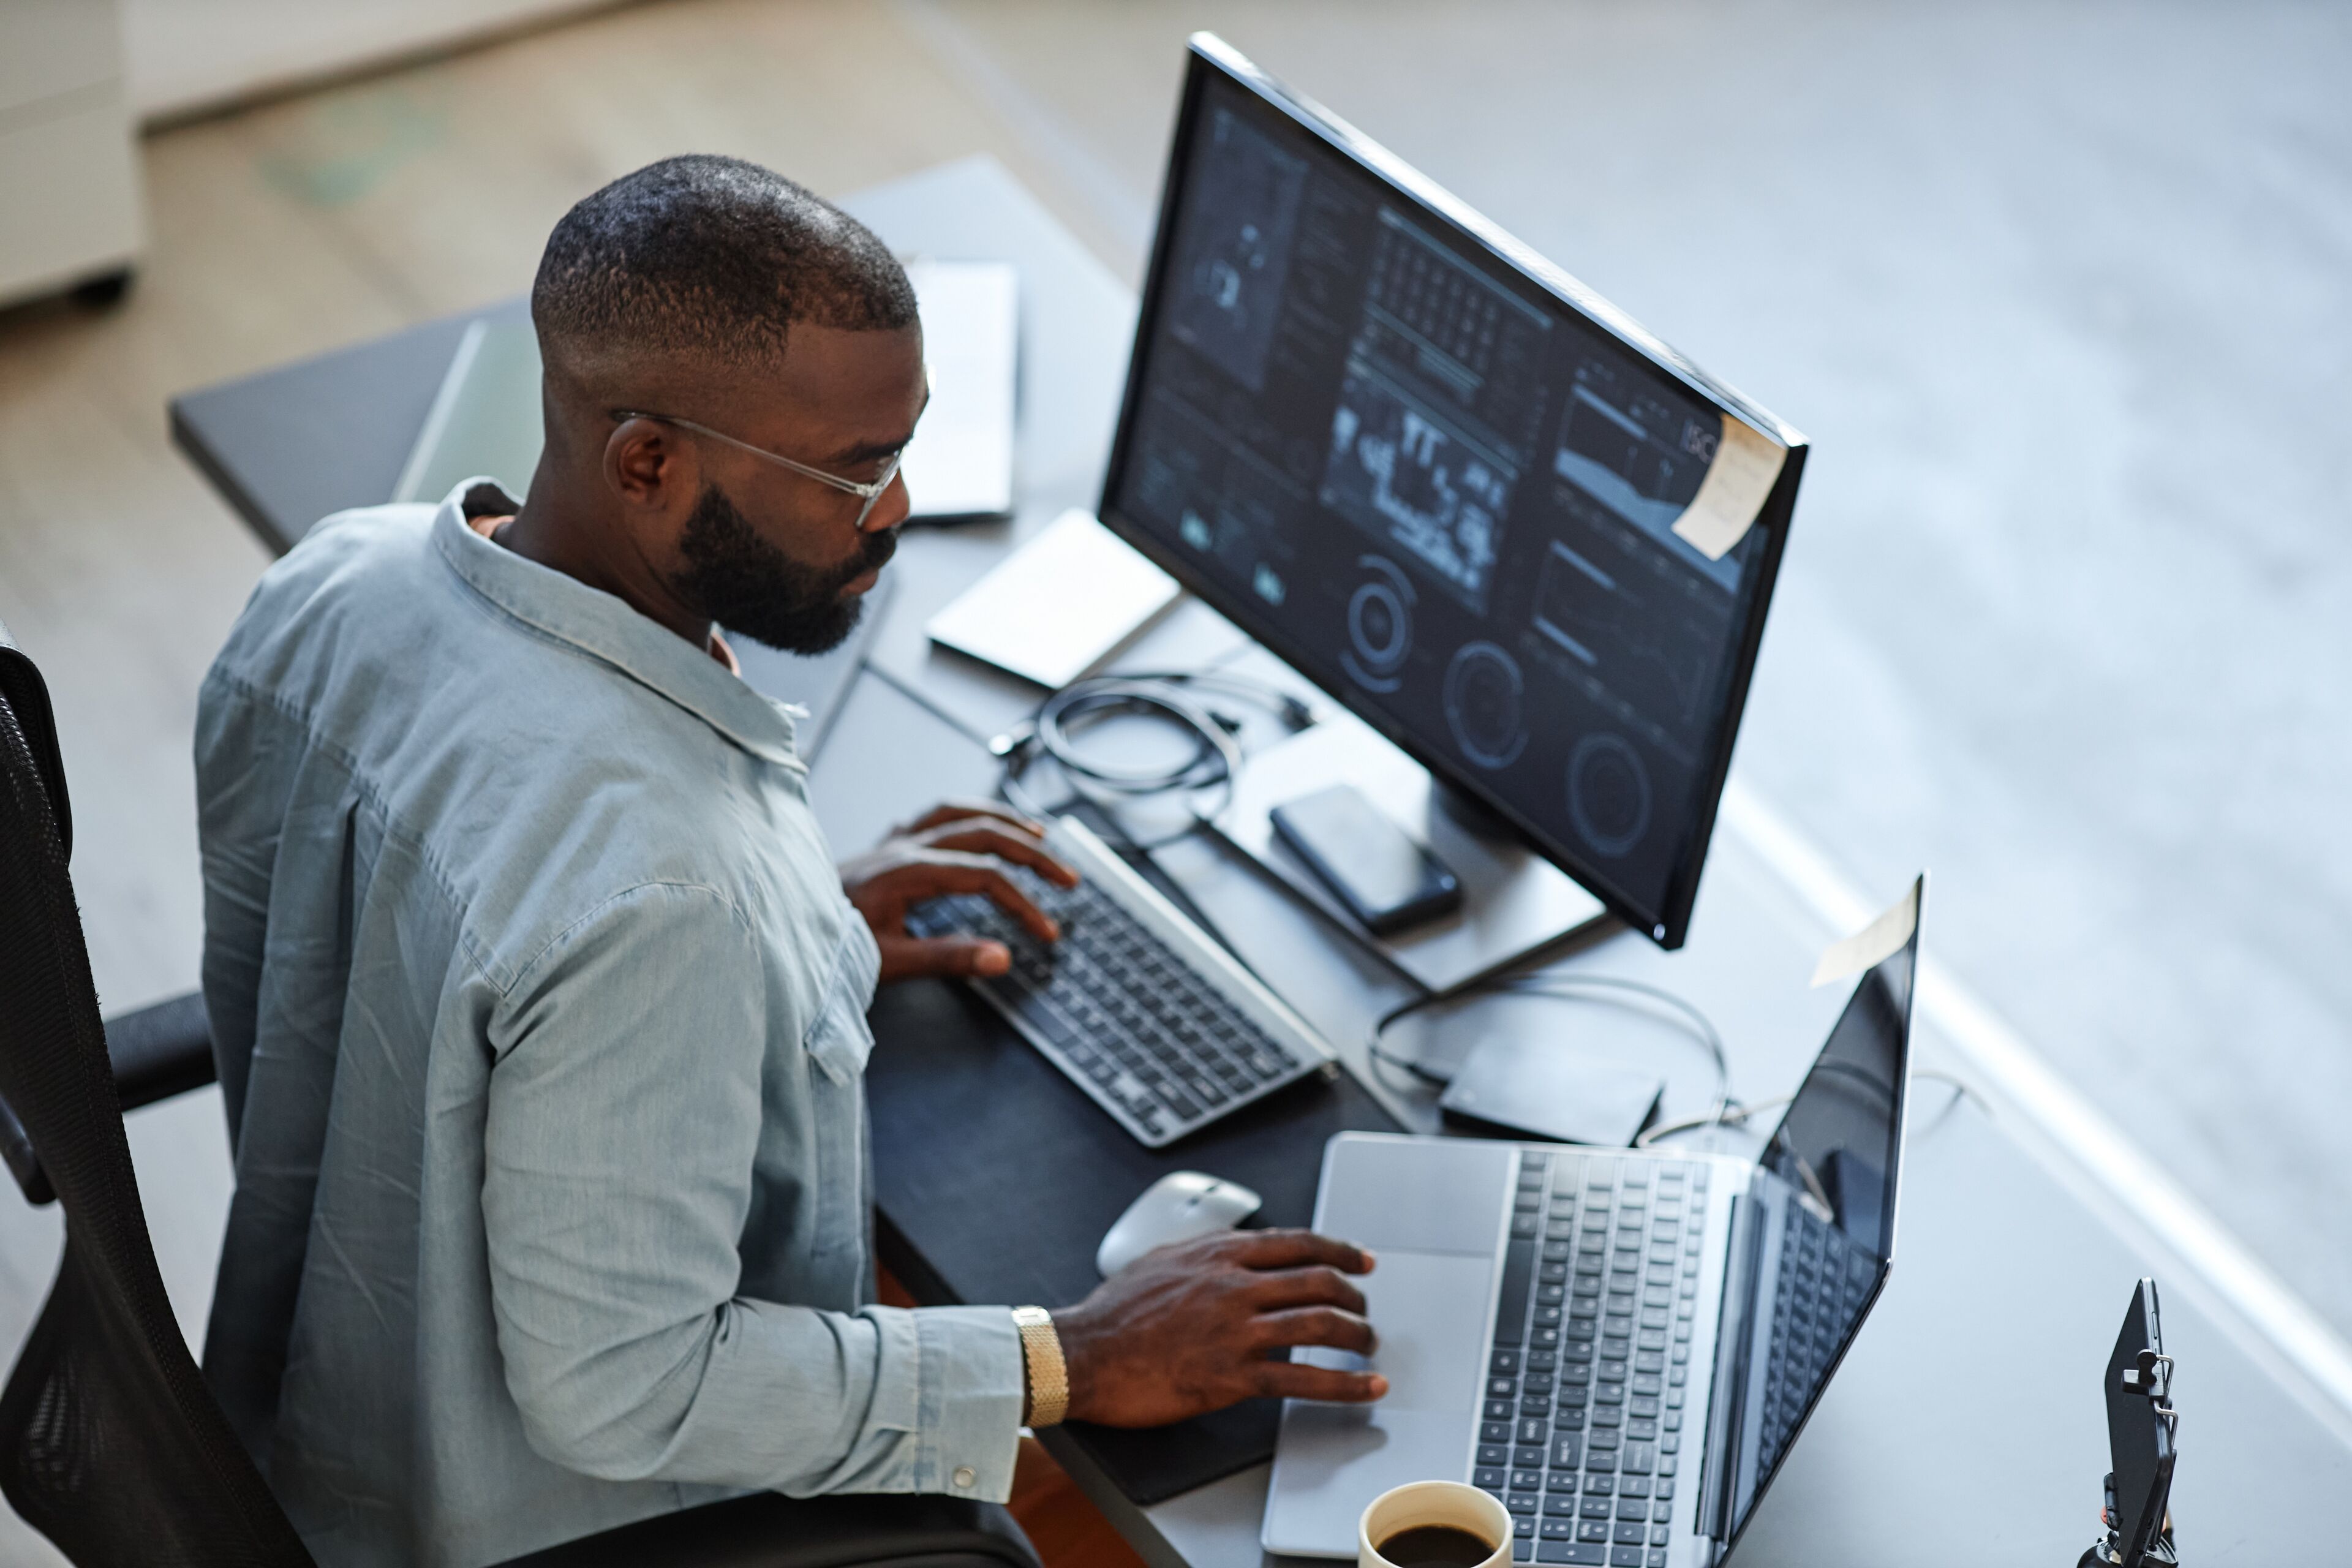 Un hombre enfocado trabaja en una configuración de múltiples monitores, rodeado de gadgets tecnológicos, reflejando un espacio de trabajo profesional y moderno.